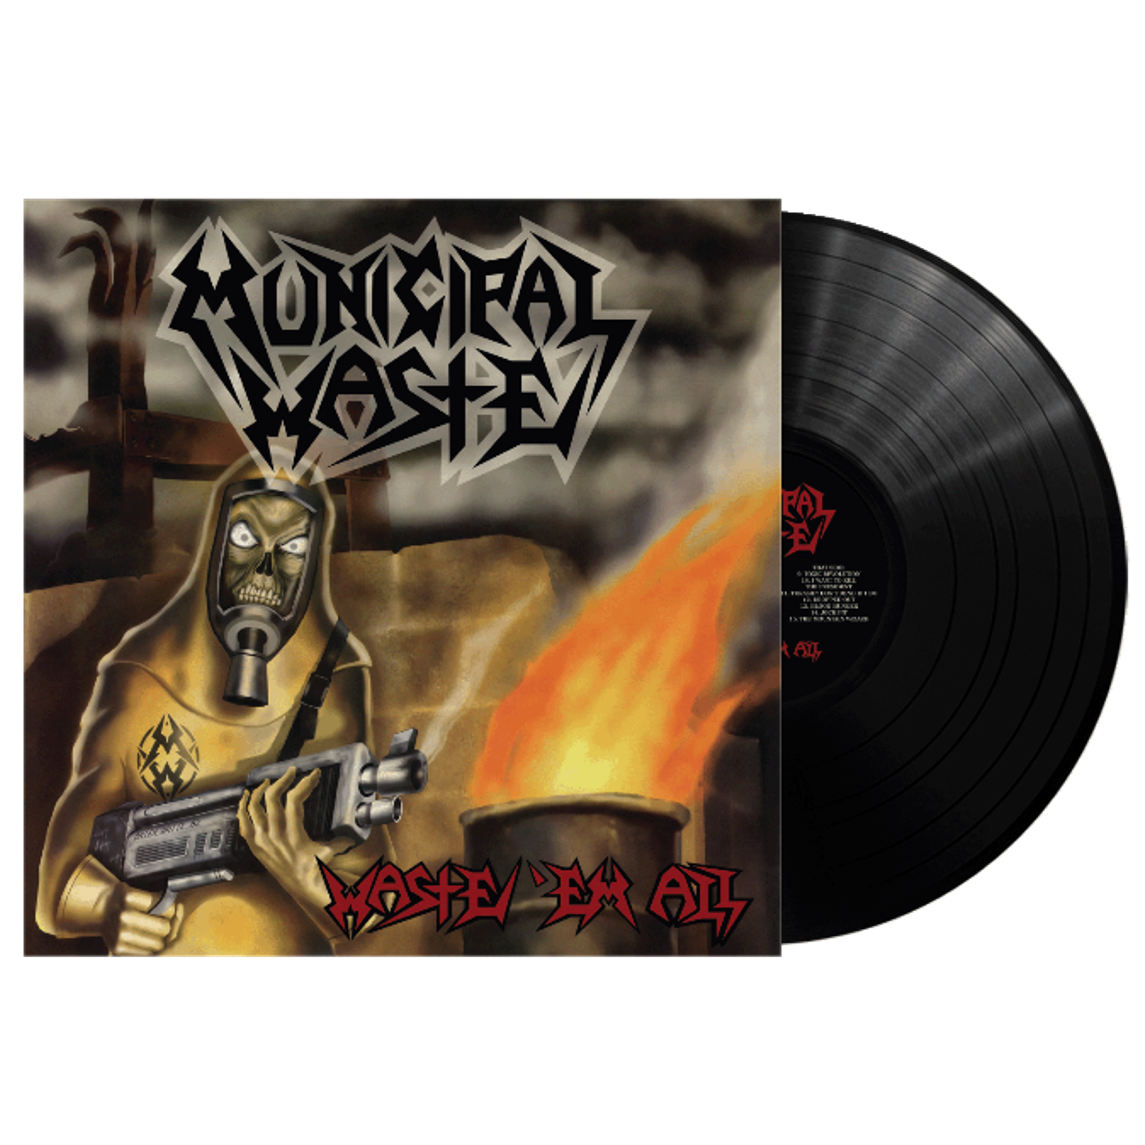 MUNICIPAL WASTE - Waste 'Em All - LP - Vinyl